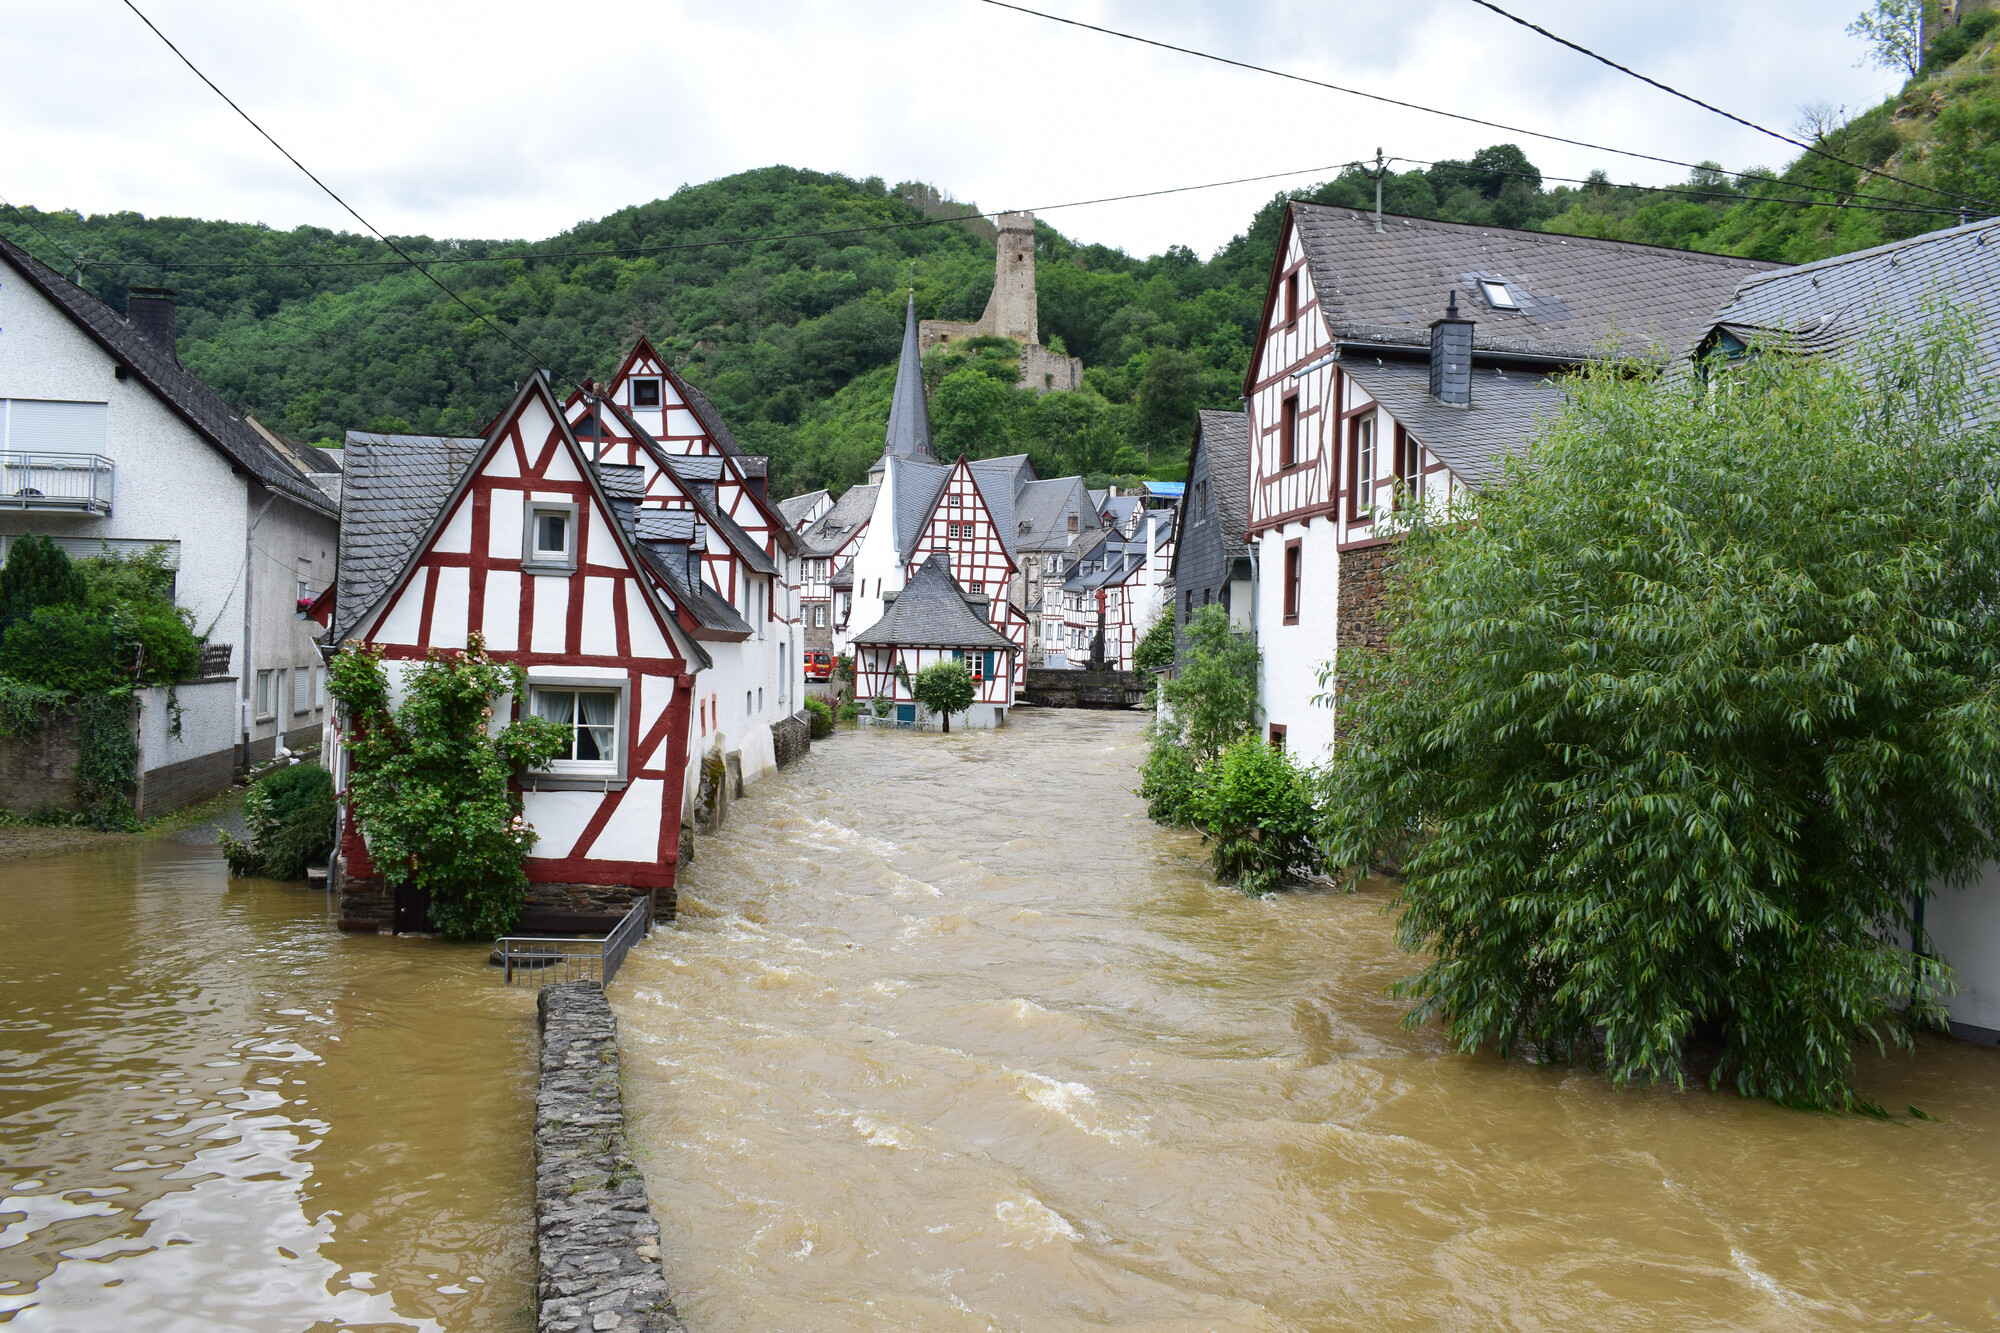 Dorfzentrum von Monreal im Elz-Hochwasser, Juli 2021